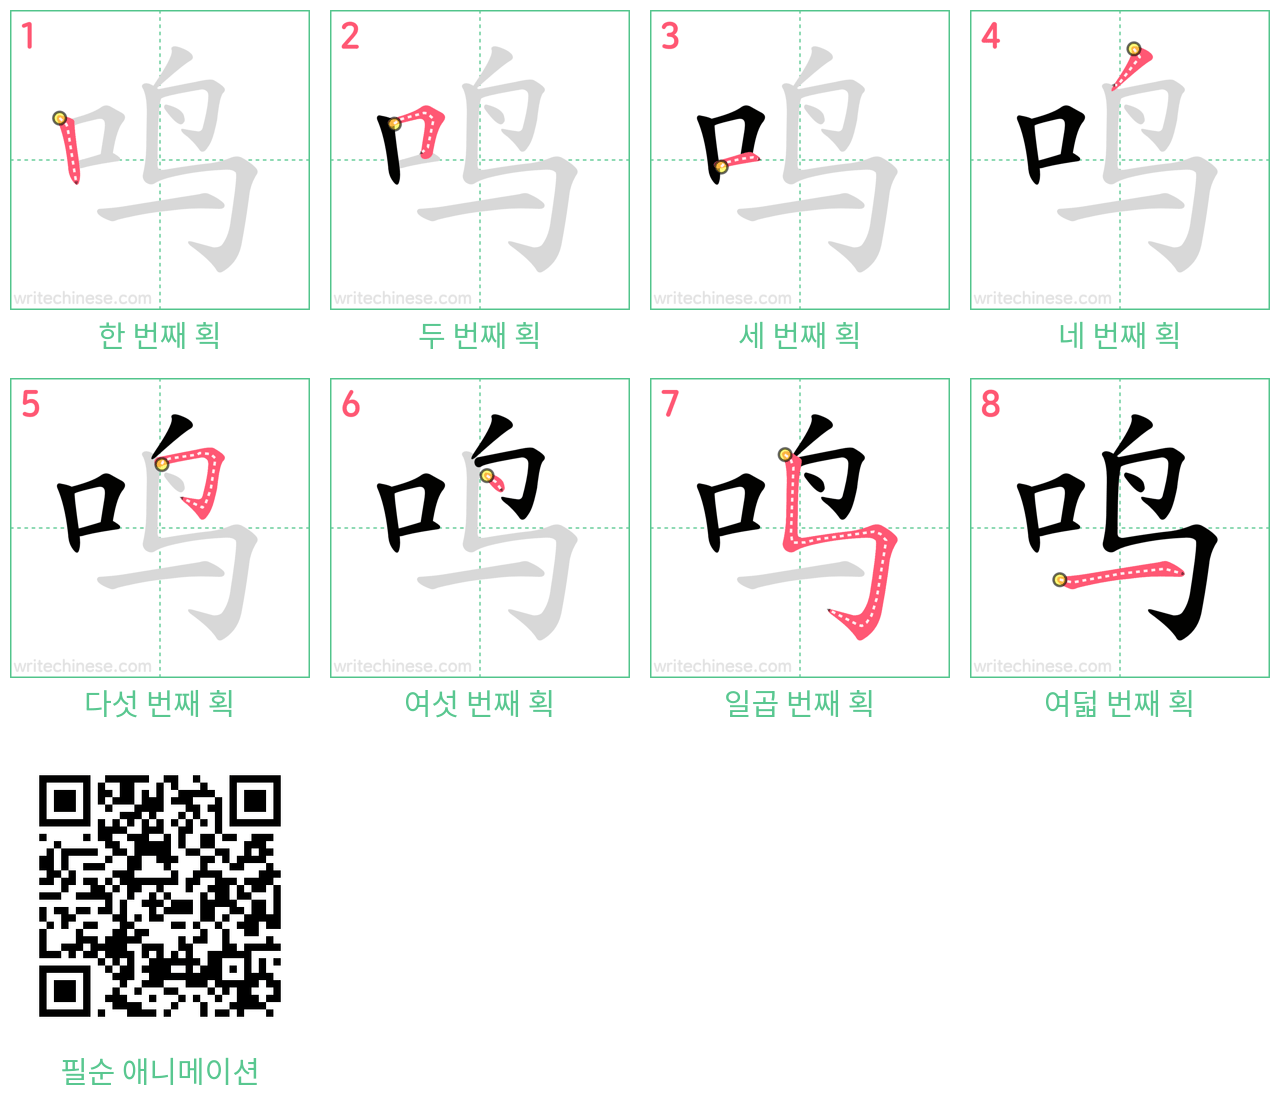 鸣 step-by-step stroke order diagrams